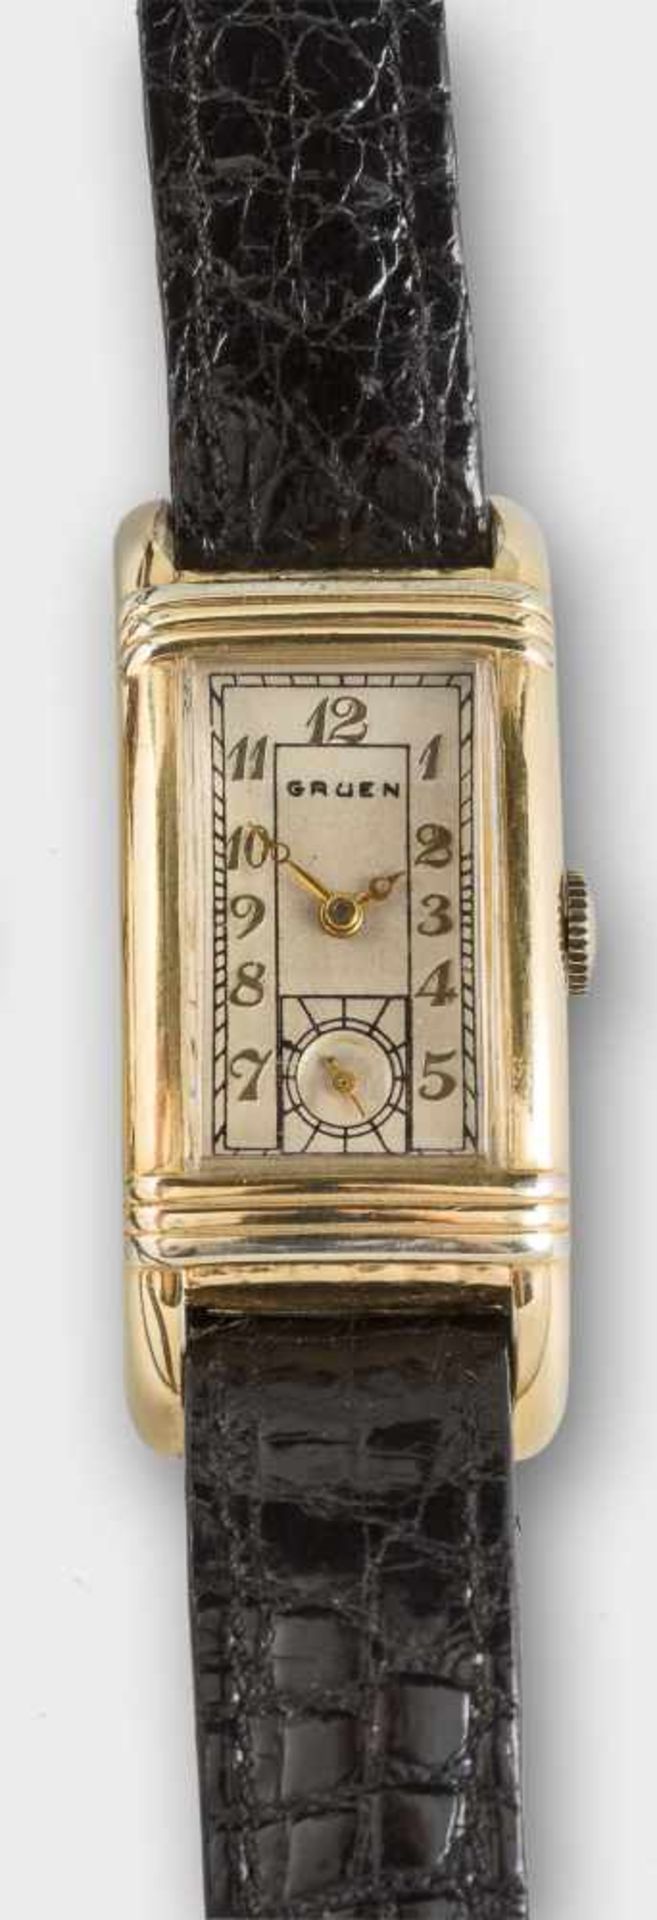 Gruen-Vintage-Armbanduhr.Vergoldet und Stahl. Längsrechteckig mit silbrigem Zifferblatt und